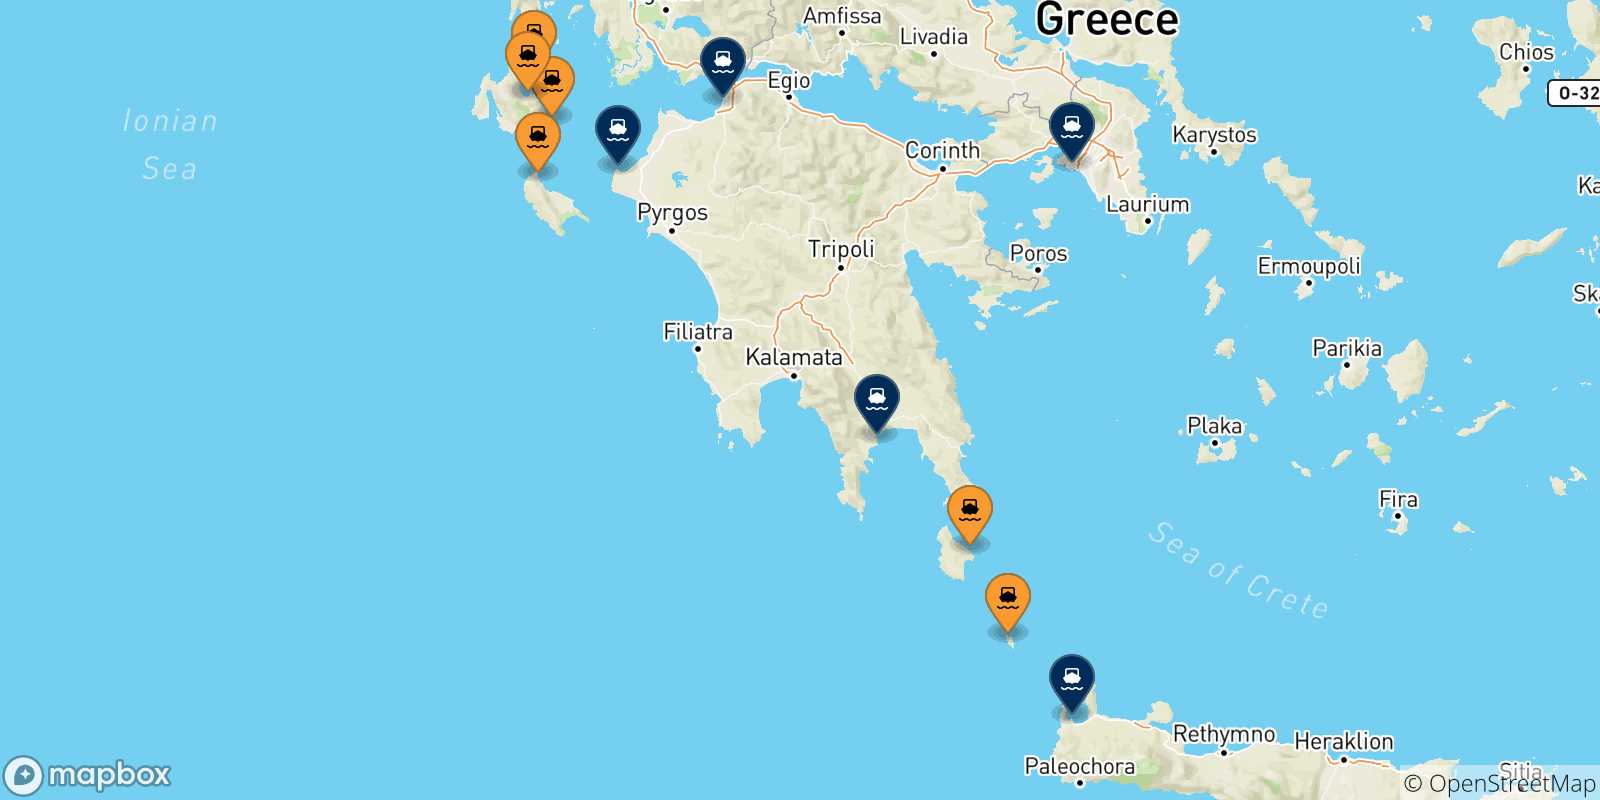 Mappa delle possibili rotte tra le Isole Ionie e la Grecia